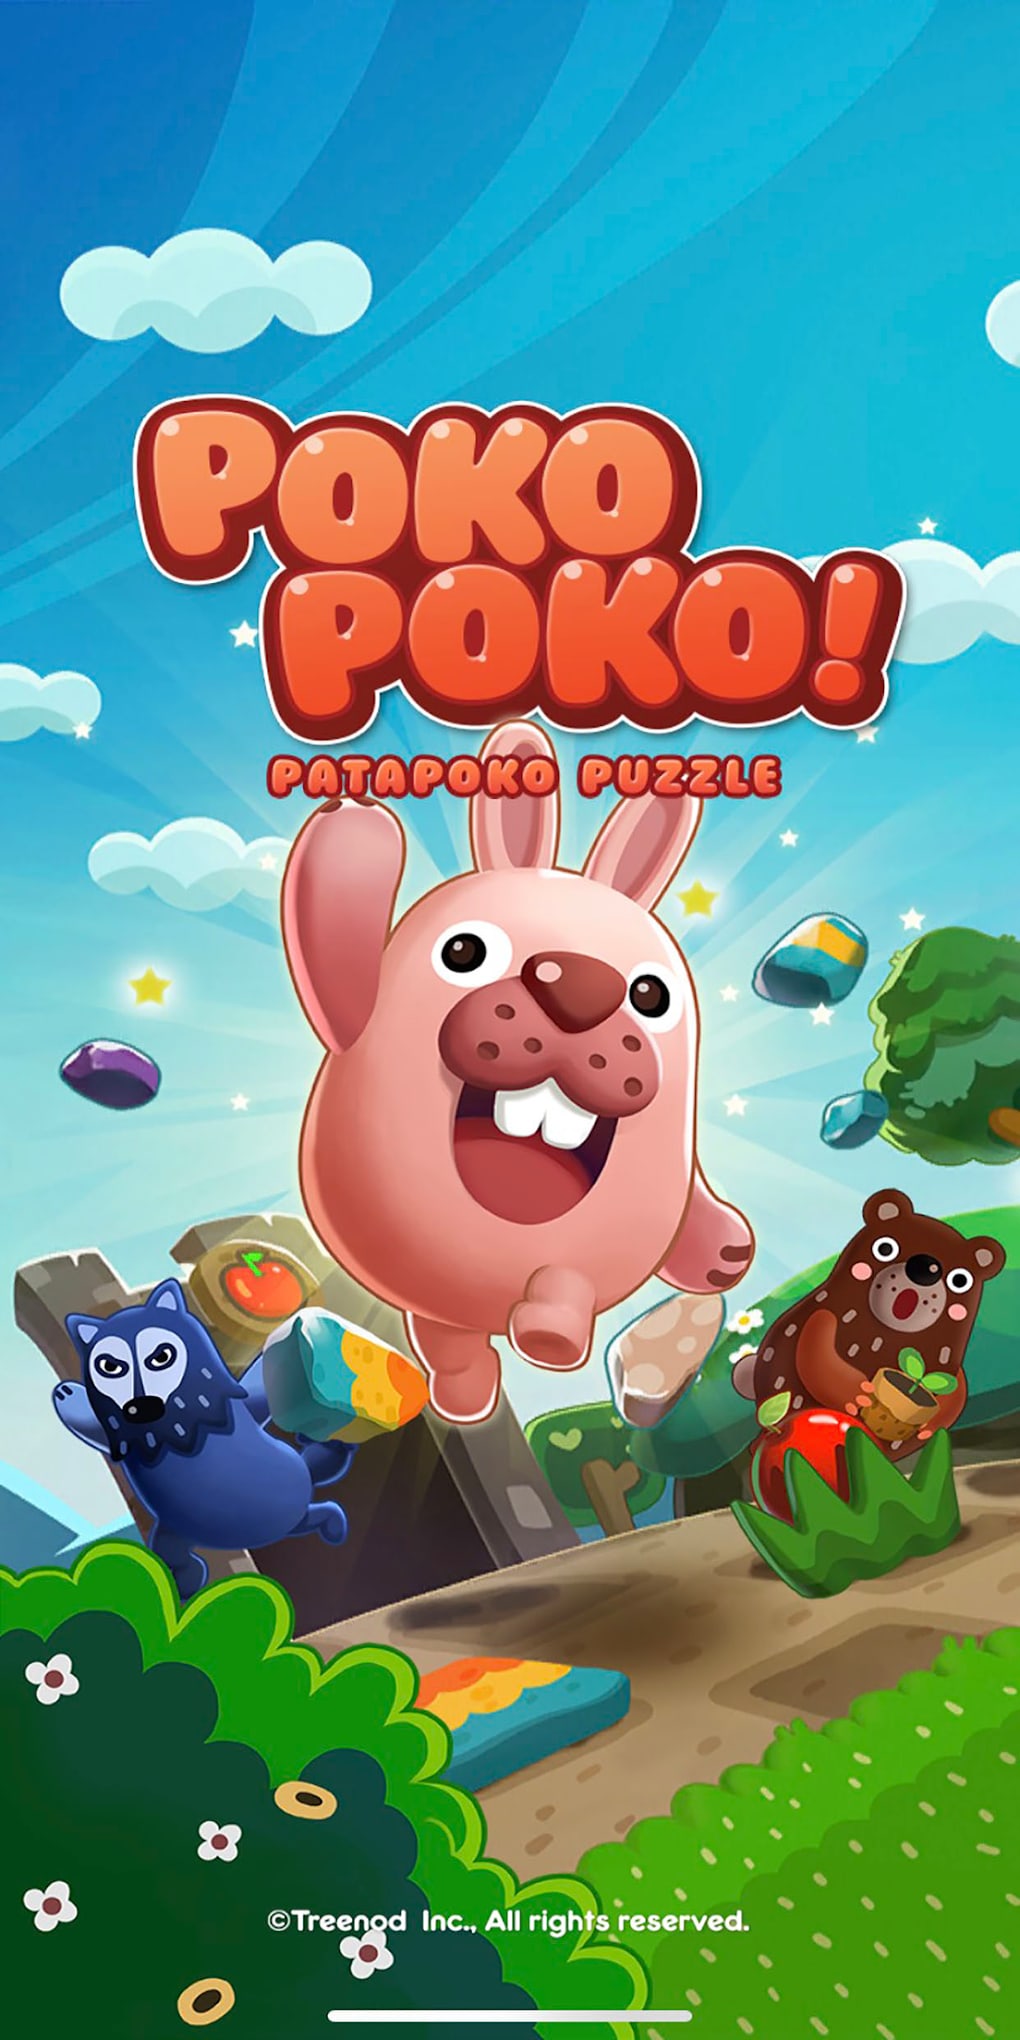 Poki Jogos Online - Arcade, Corrida, RPG e Ação APK (Android Game